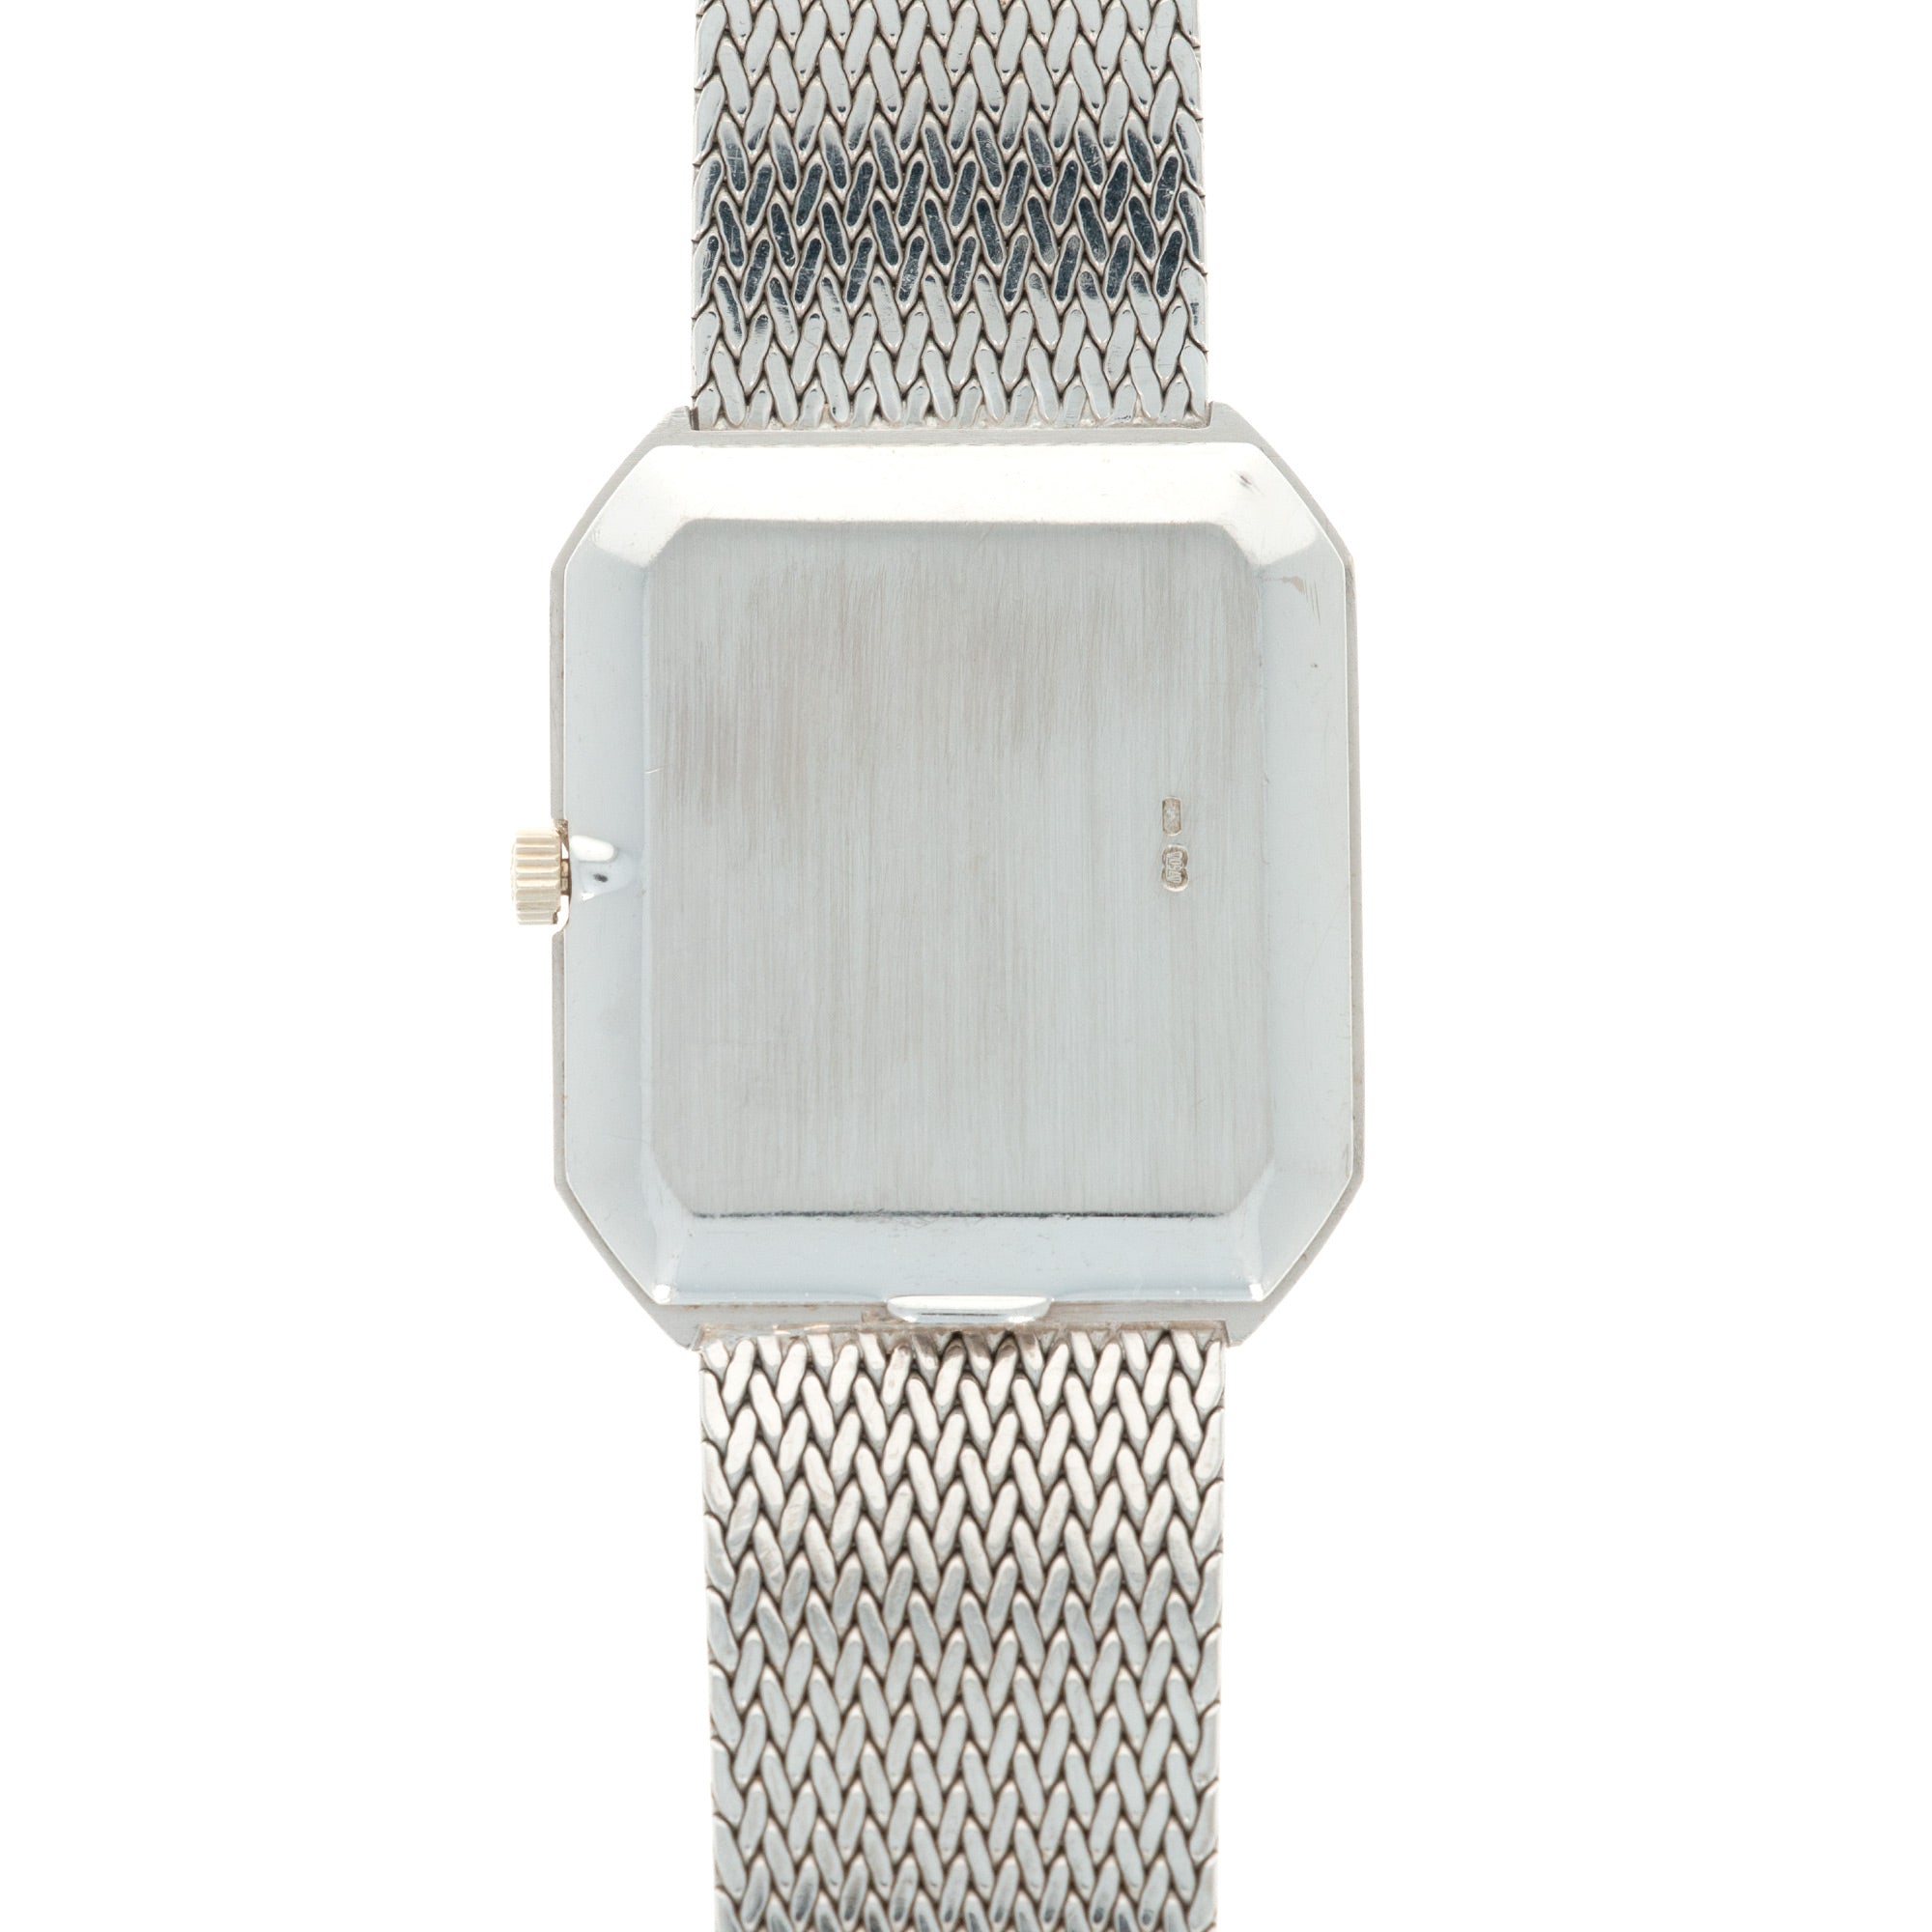 Patek Philippe - Patek Philippe White Gold Rectangular Watch Ref. 3860 - The Keystone Watches